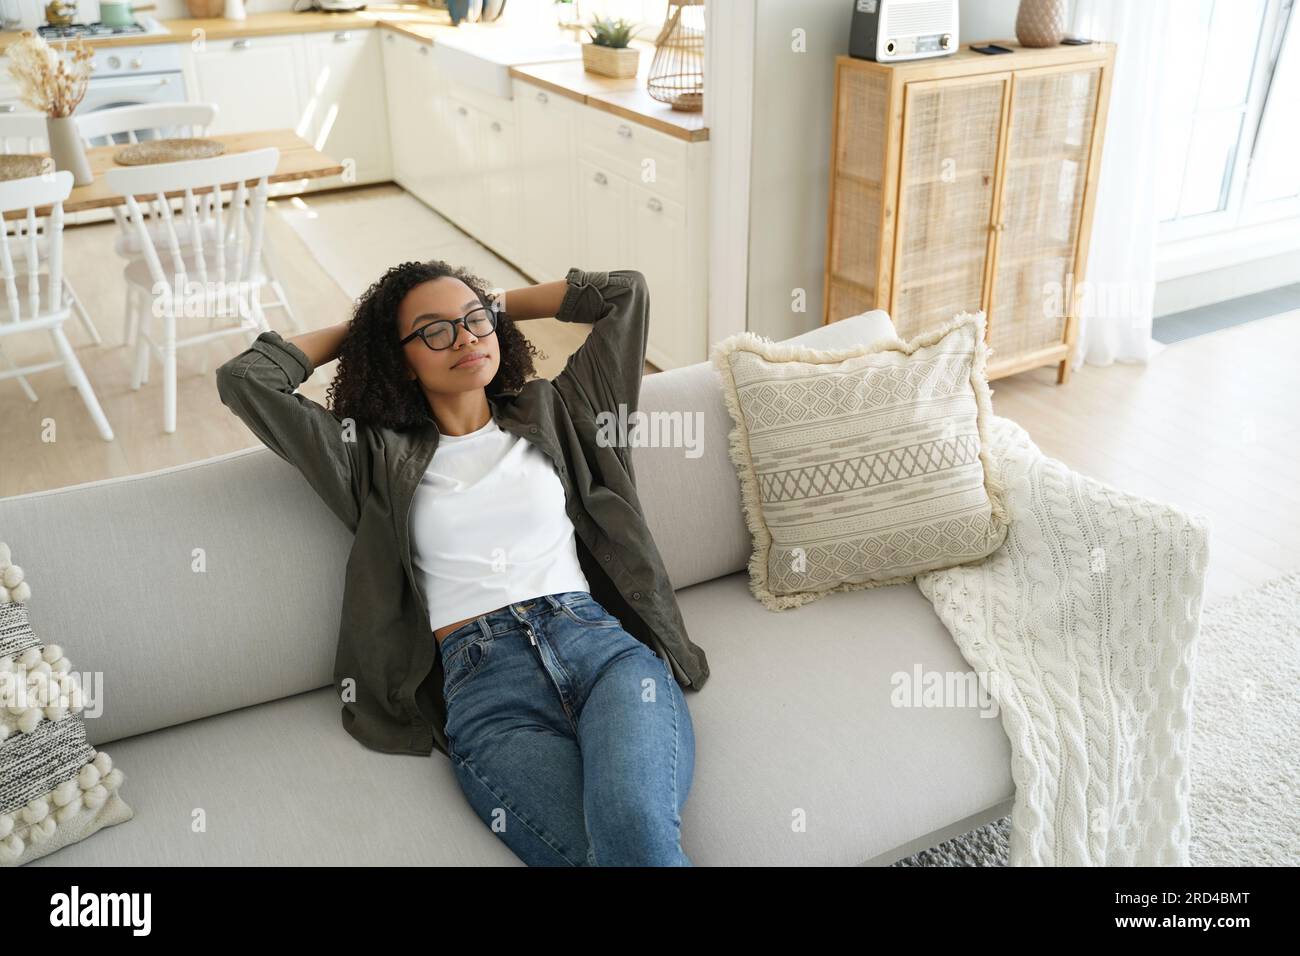 Ruhige afroamerikanische Frau auf einer gemütlichen Couch, Hände hinter dem Kopf, genießt ein faules Wochenende zu Hause. Entspannt, erholsam in komfortabler Umgebung mit frischem Stockfoto